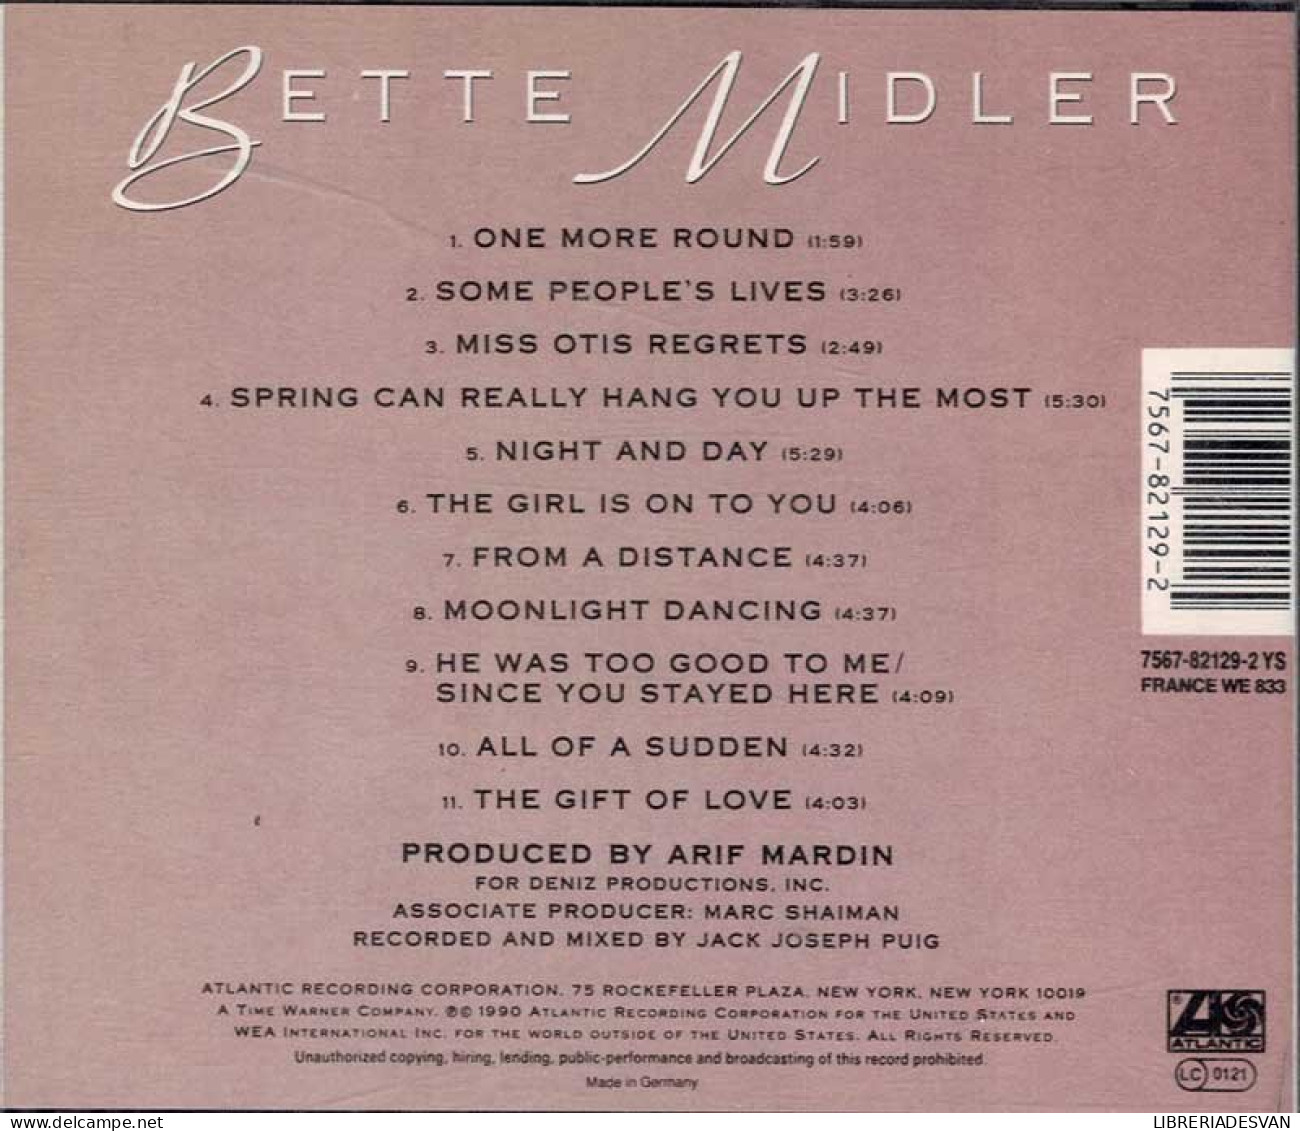 Bette Midler - Some People's Lives. CD - Disco, Pop